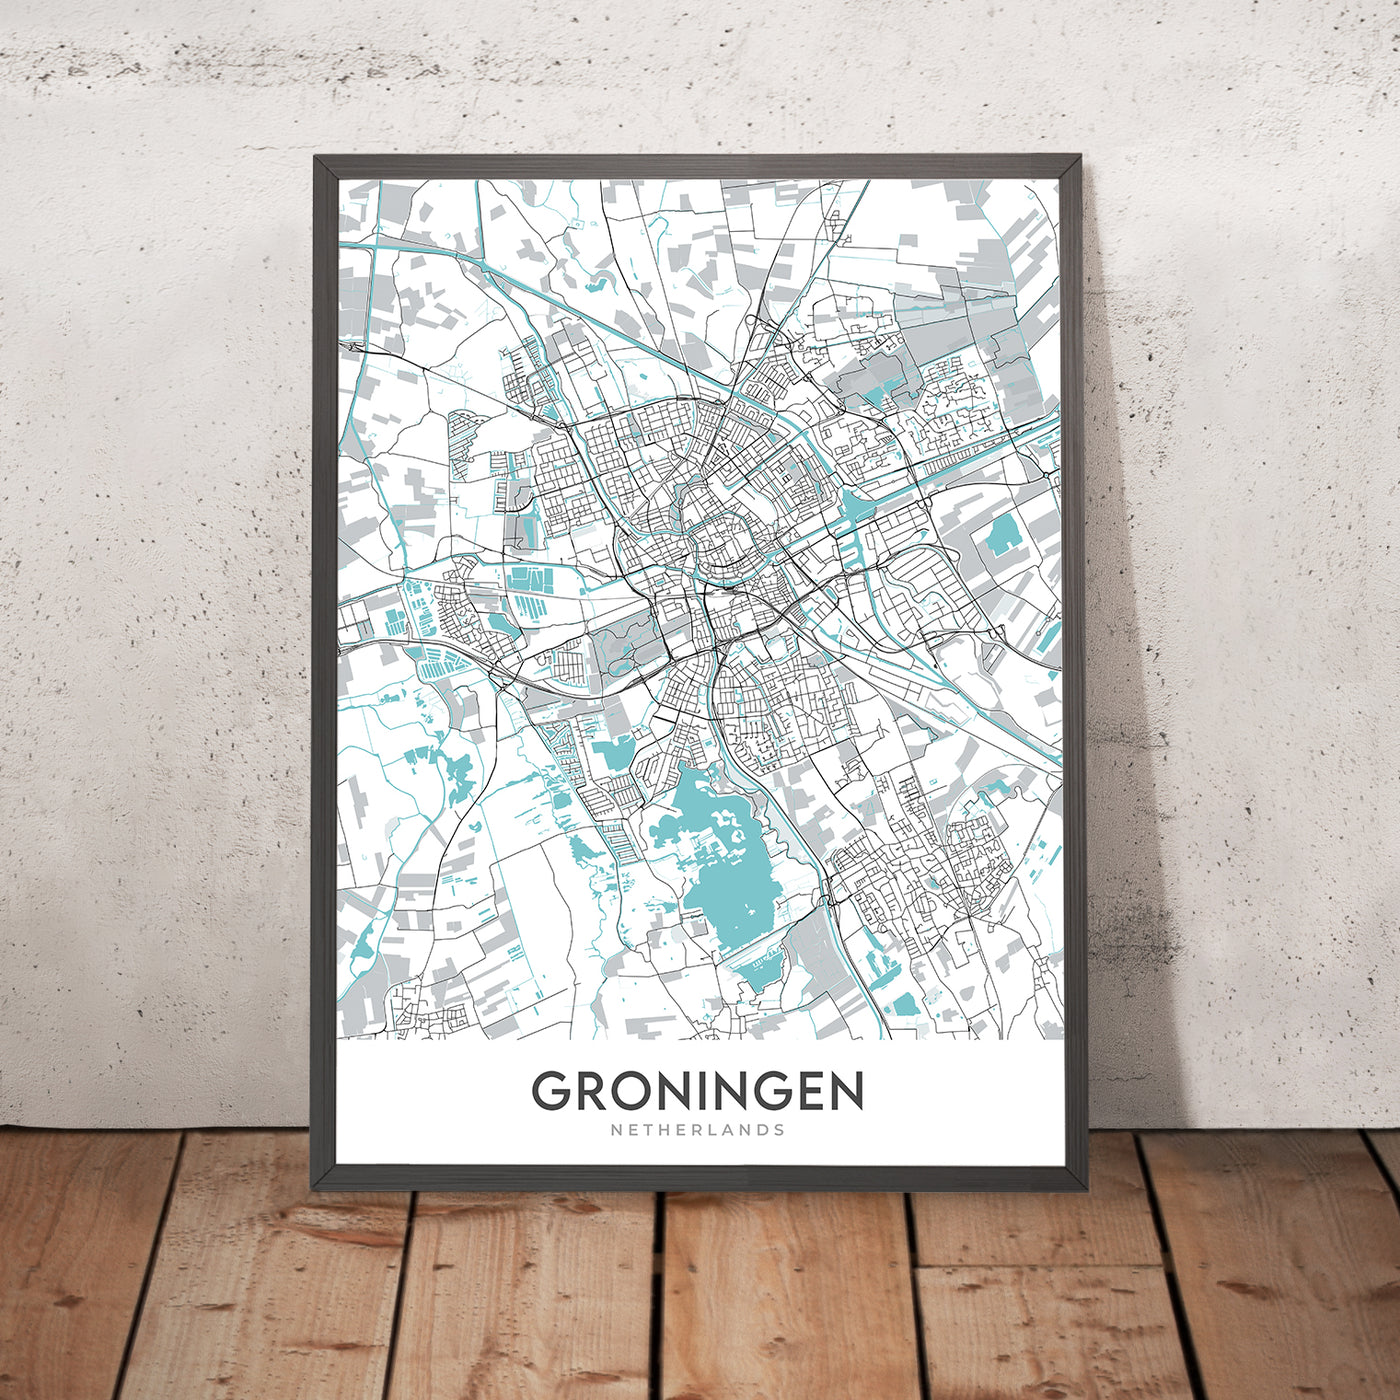 Mapa moderno de la ciudad de Groningen, Países Bajos: universidad, museo, torre, canal, parque